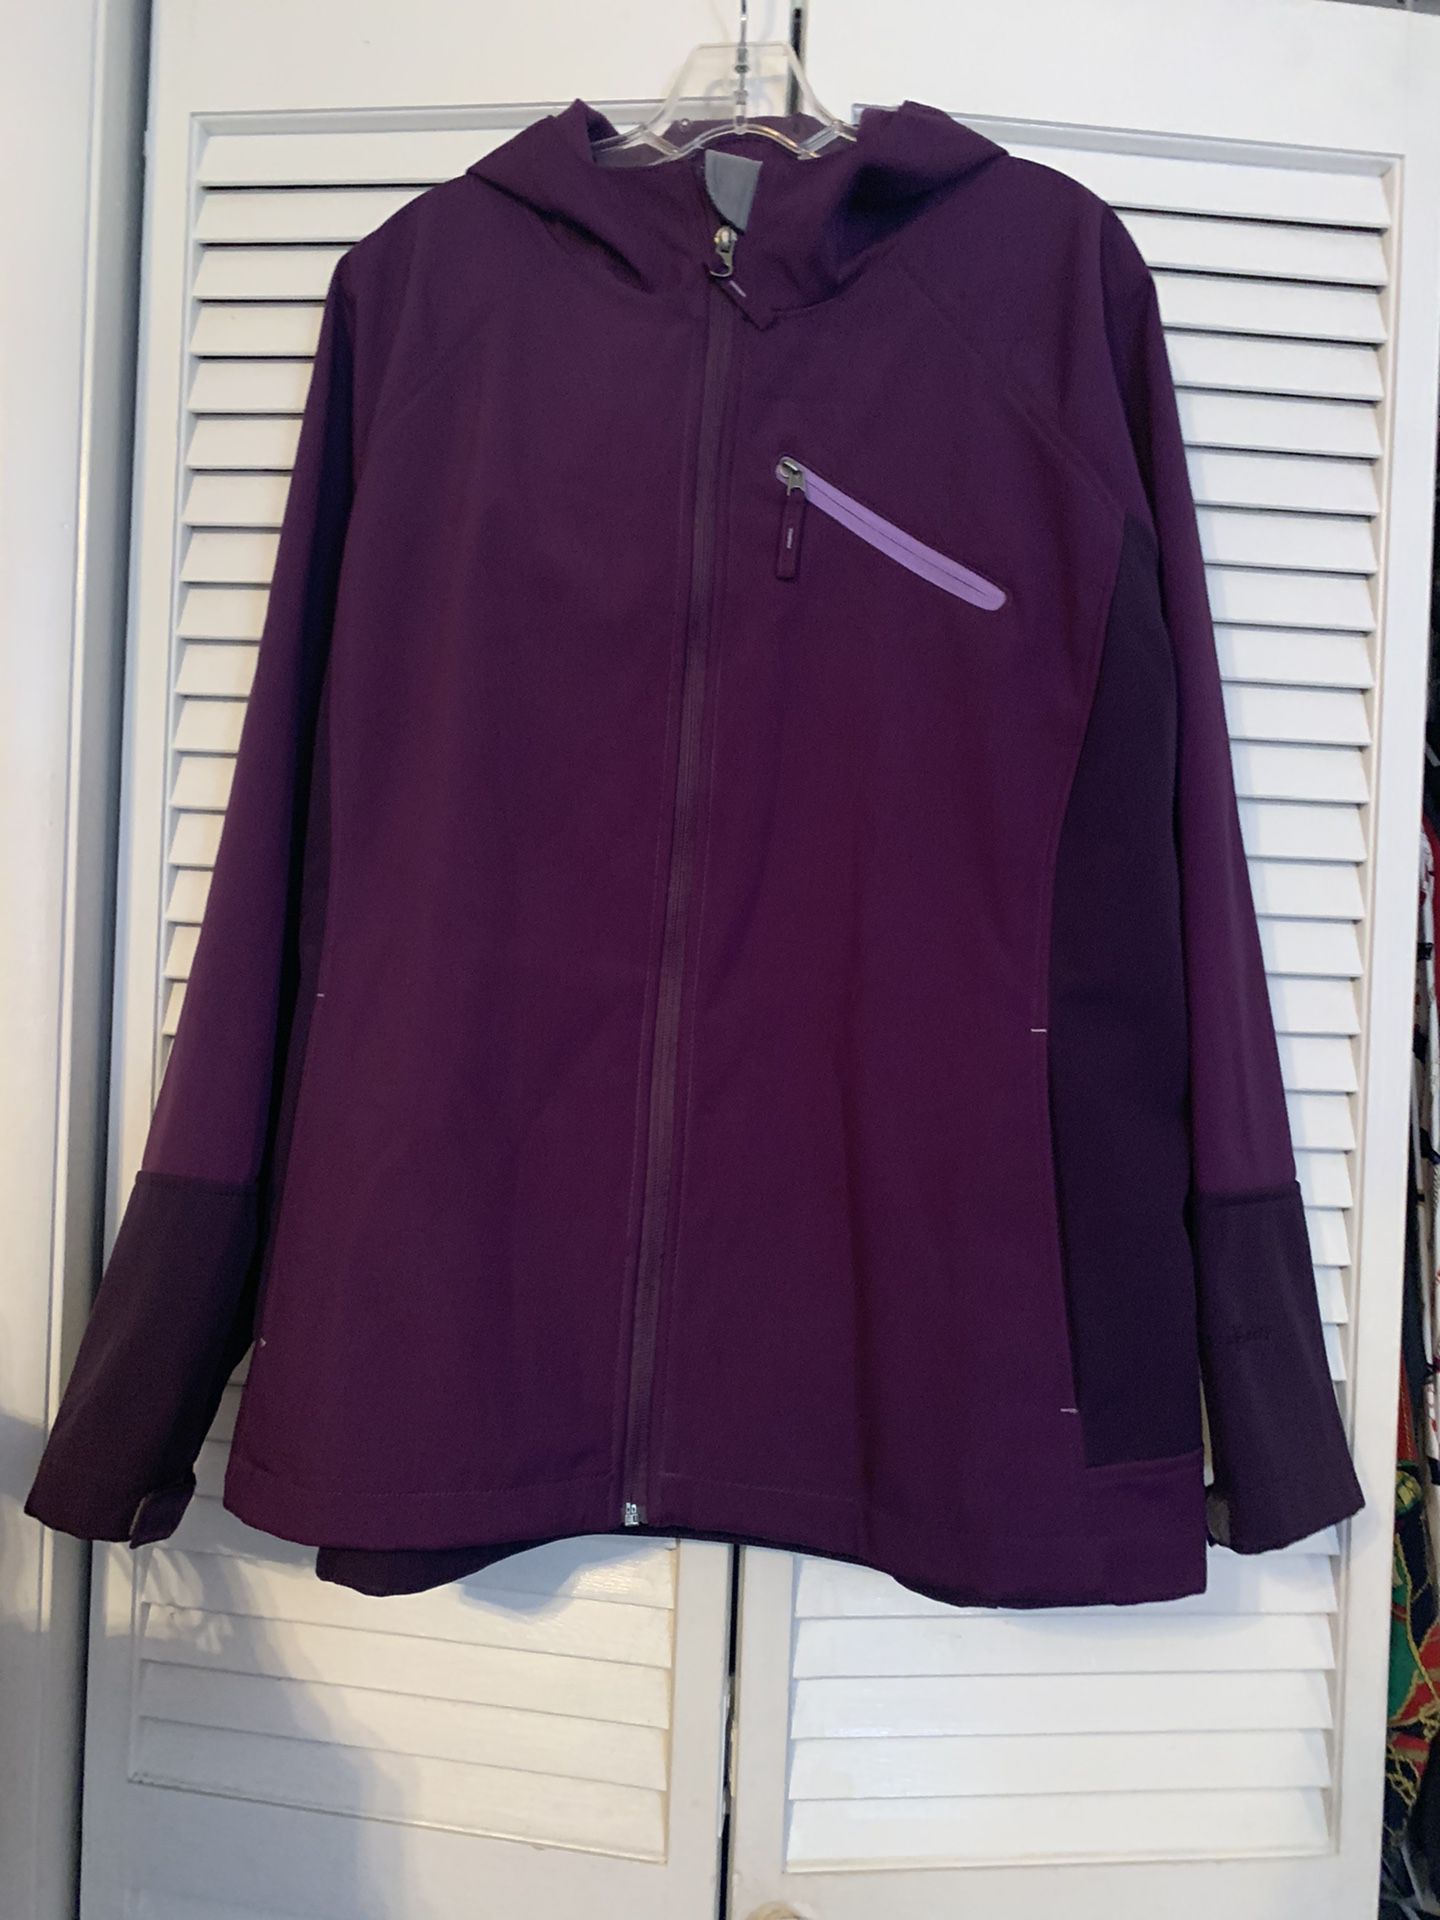 Free Tech Women S Size 3x Purple Hooded Jacket For Sale In Myrtle Beach Sc Offerup